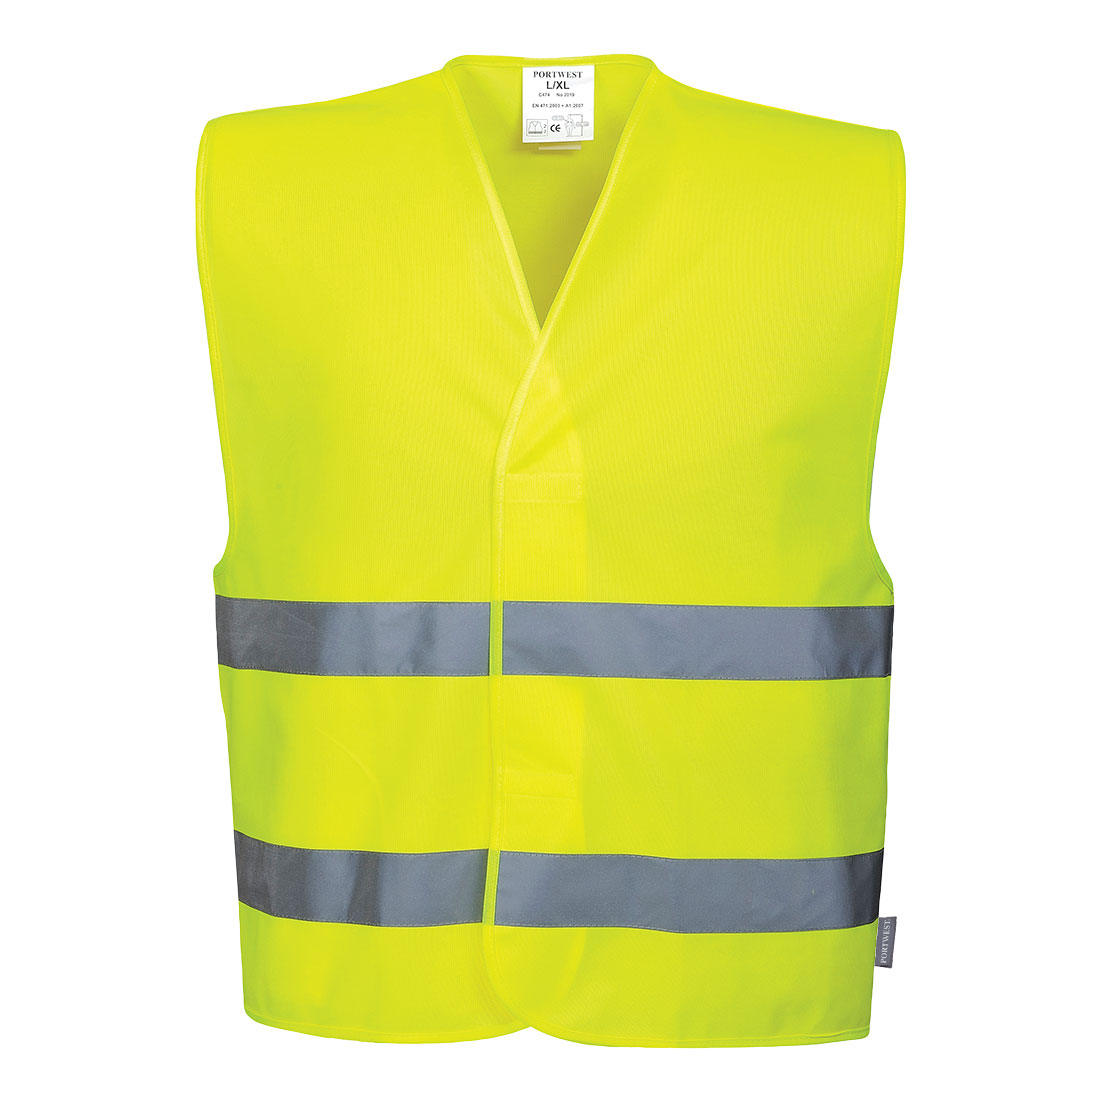 Reflexní vesta s dvěma pruhy Barva: žlutá, Velikost: S/M